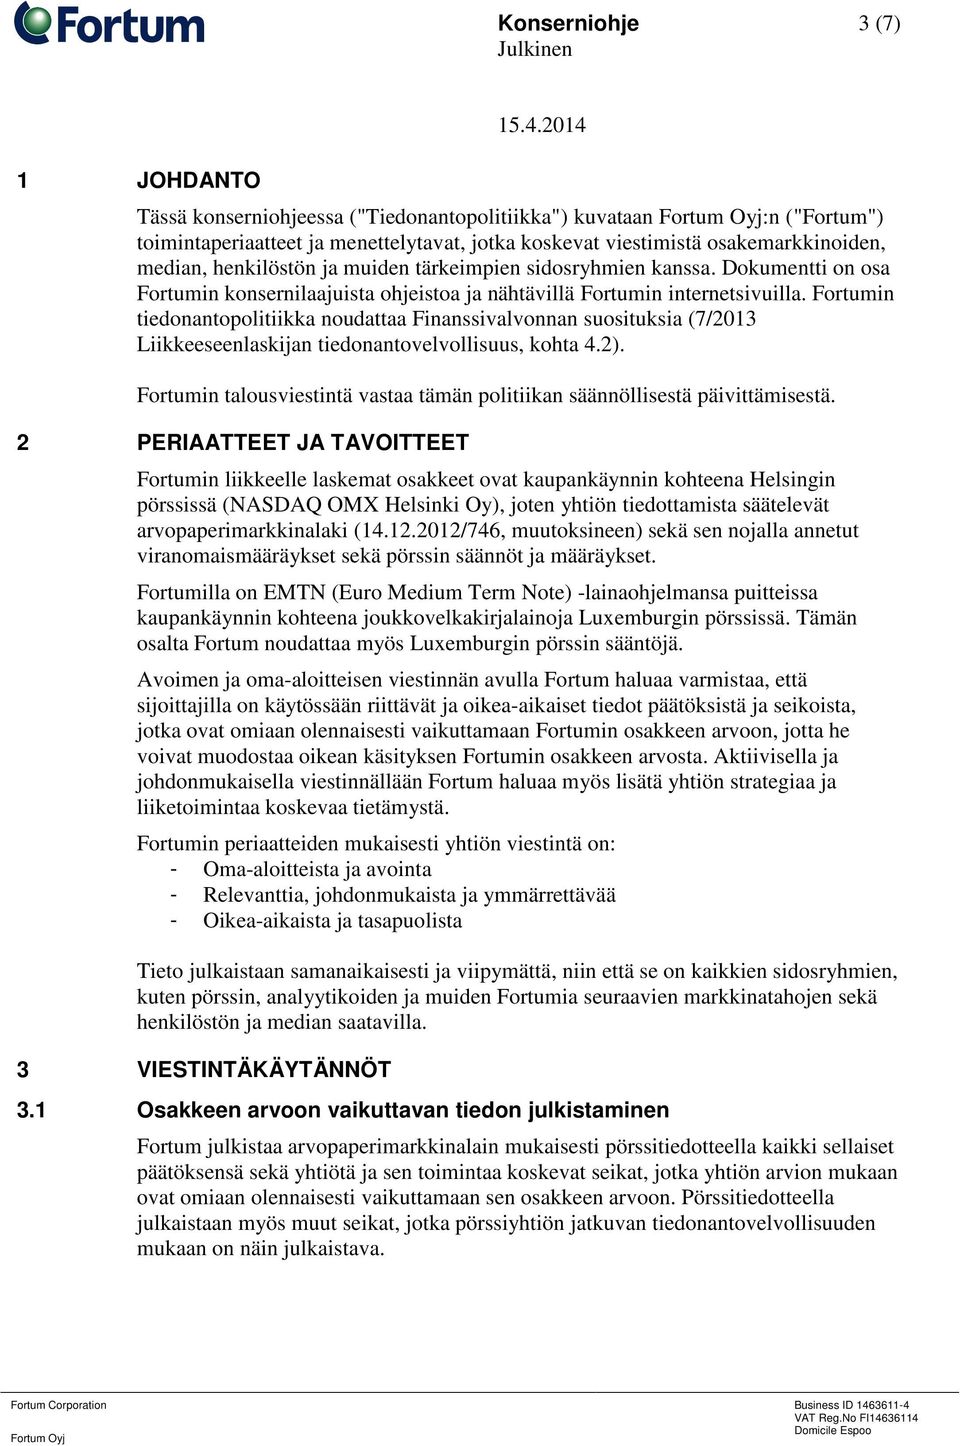 Fortumin tiedonantopolitiikka noudattaa Finanssivalvonnan suosituksia (7/2013 Liikkeeseenlaskijan tiedonantovelvollisuus, kohta 4.2).